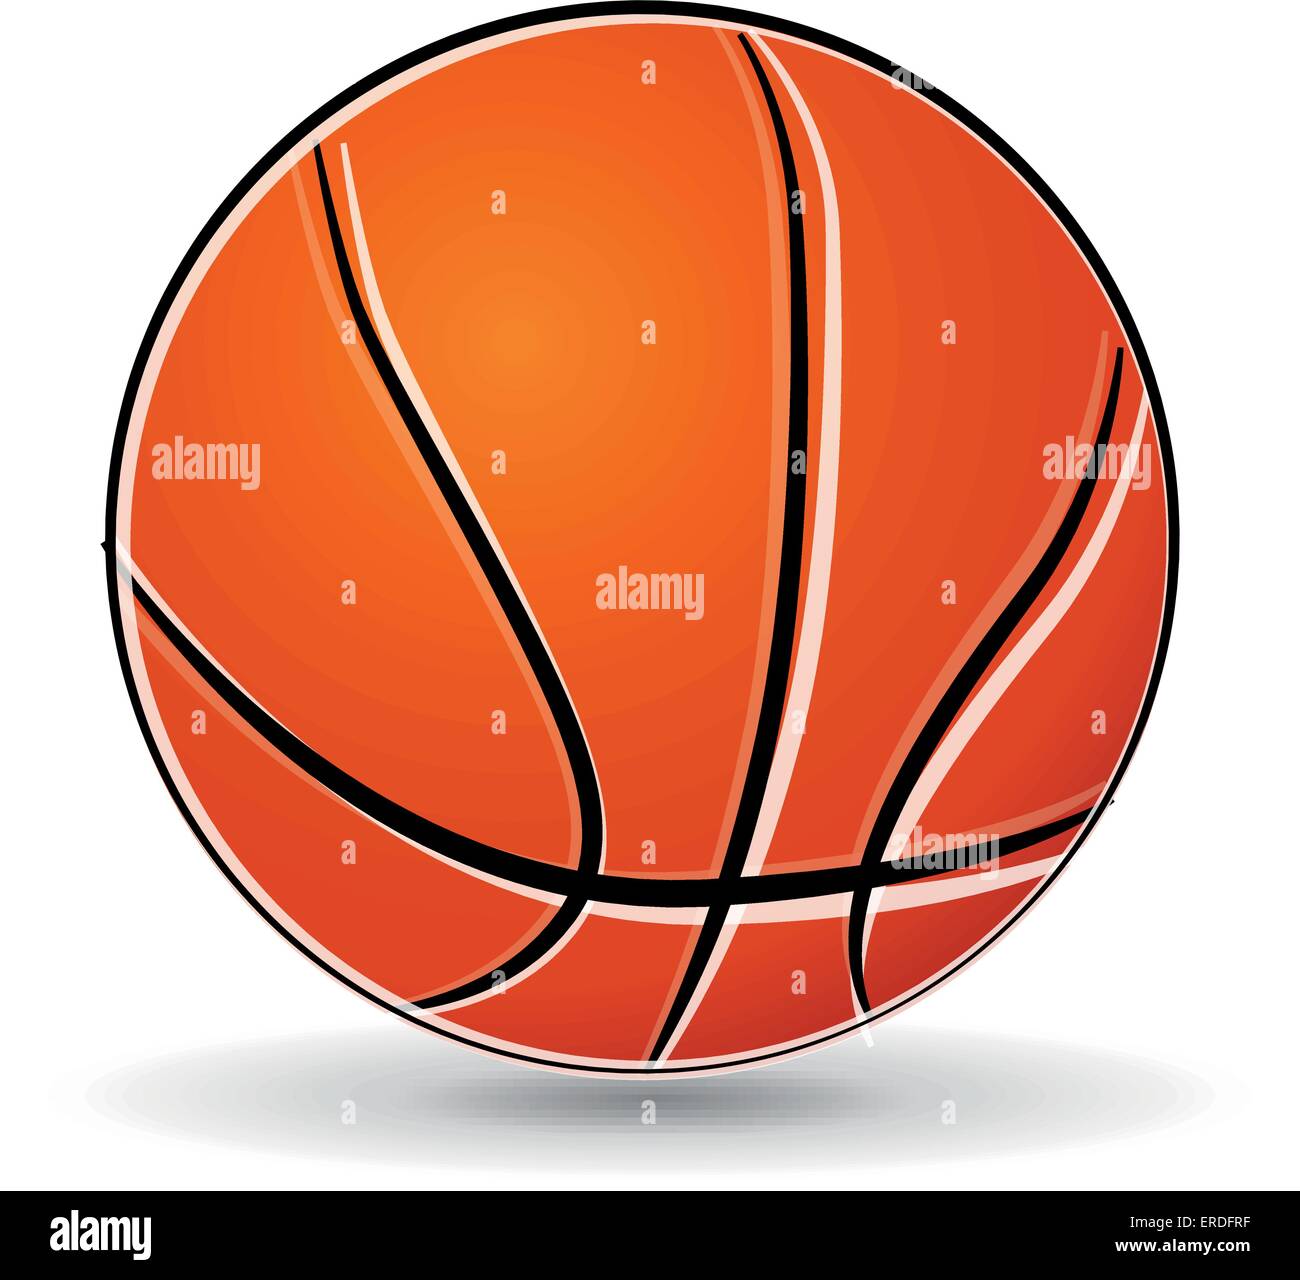 Illustrazione Vettoriale del basket ball disegno su sfondo bianco Illustrazione Vettoriale